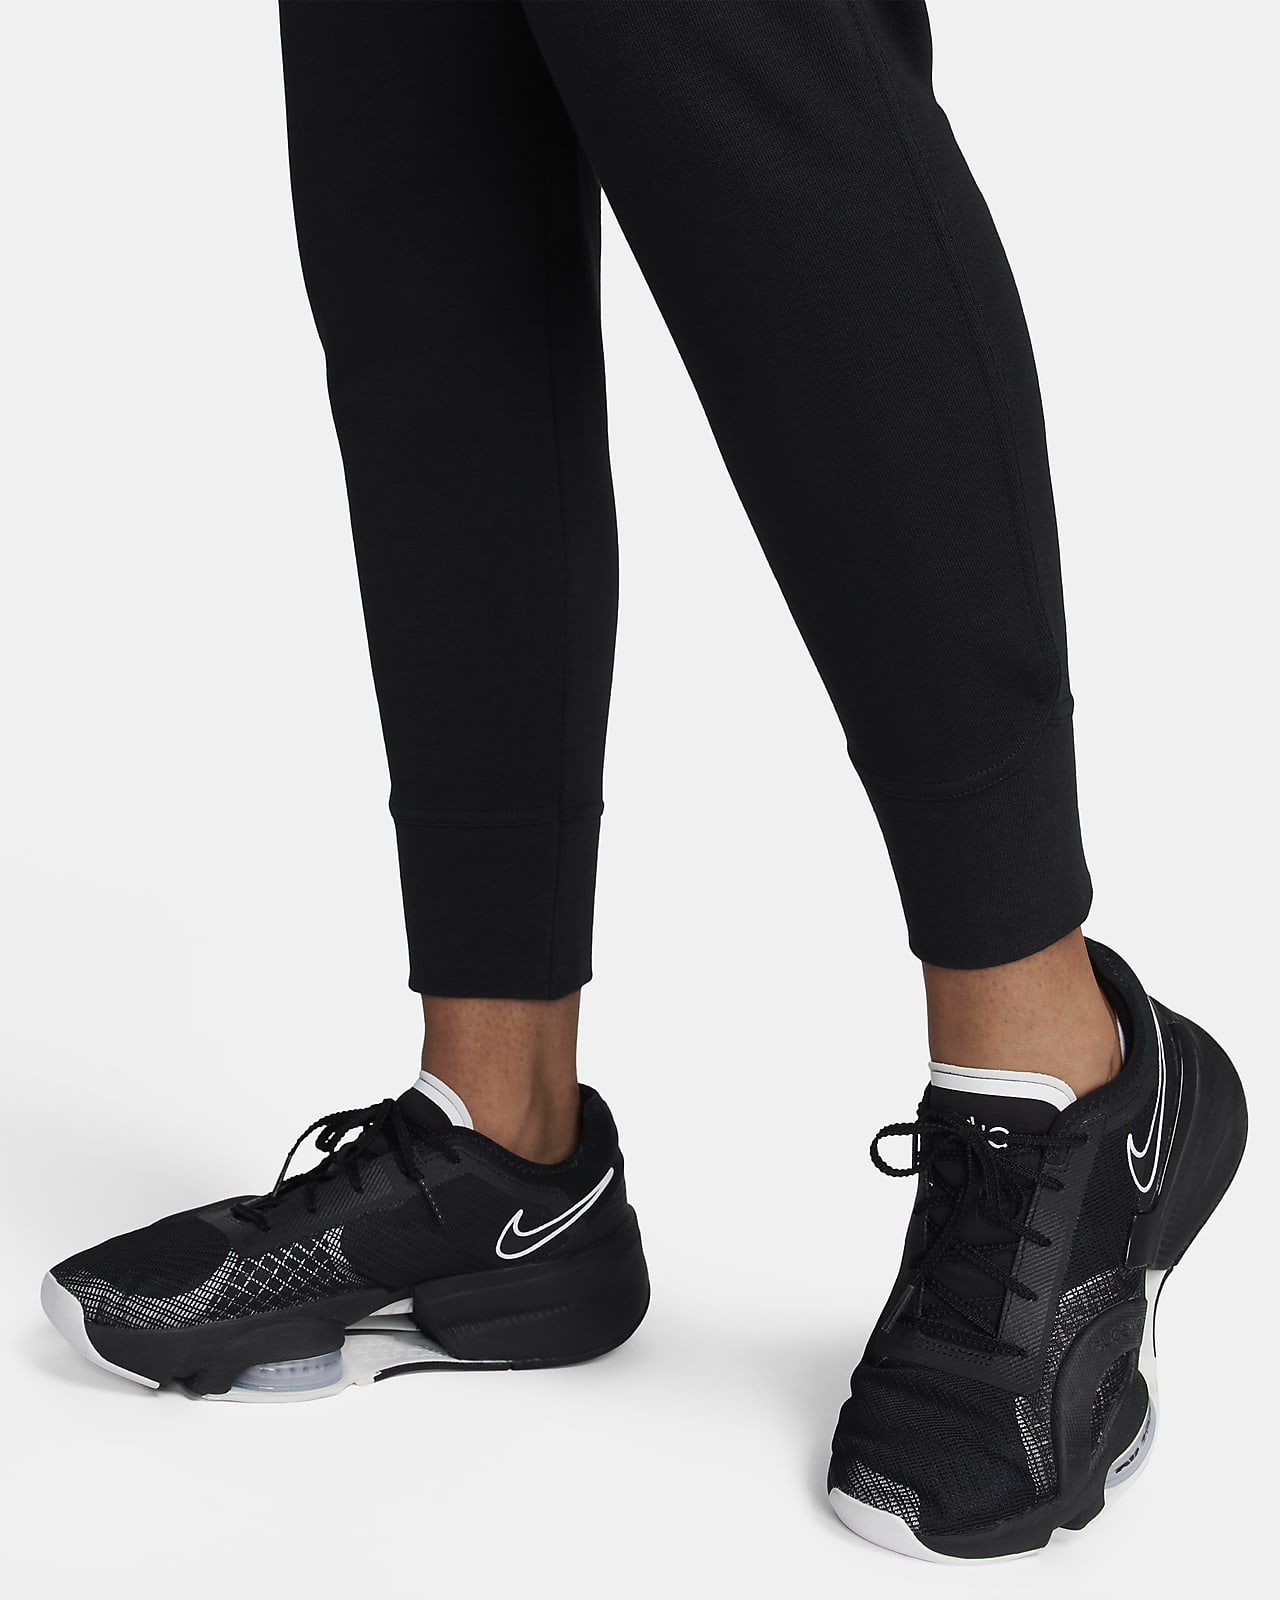 Tapijt Discipline Heerlijk Nike Dri-FIT Get Fit Trainingsbroek voor dames. Nike NL